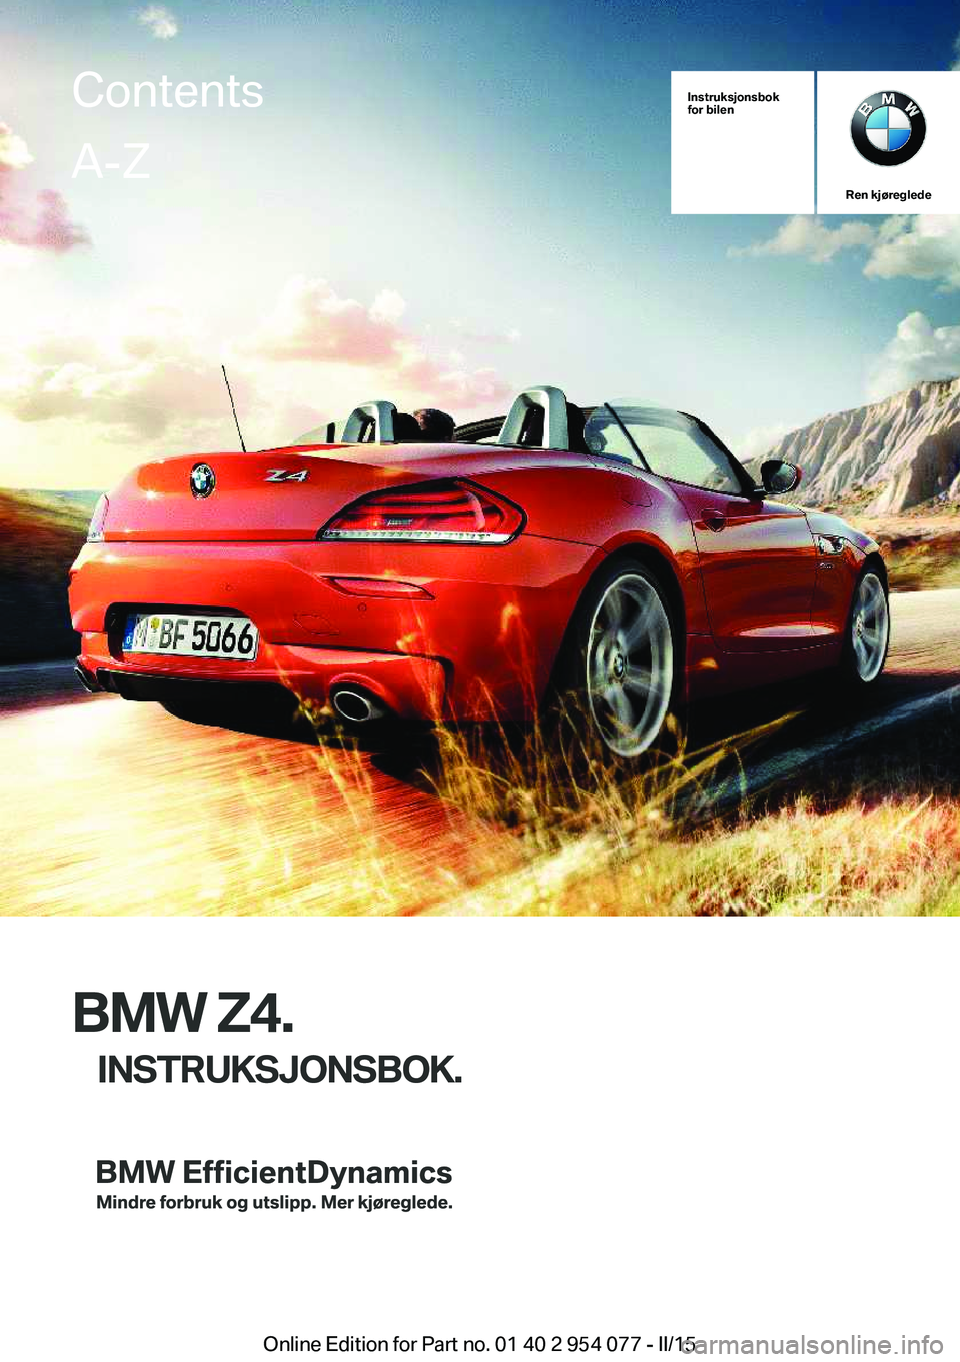 BMW Z4 2016  InstruksjonsbØker (in Norwegian) Instruksjonsbok
for bilen
Ren kjøreglede
BMW Z4.
INSTRUKSJONSBOK.
ContentsA-Z
Online Edition for Part no. 01 40 2 954 077 - II/15   